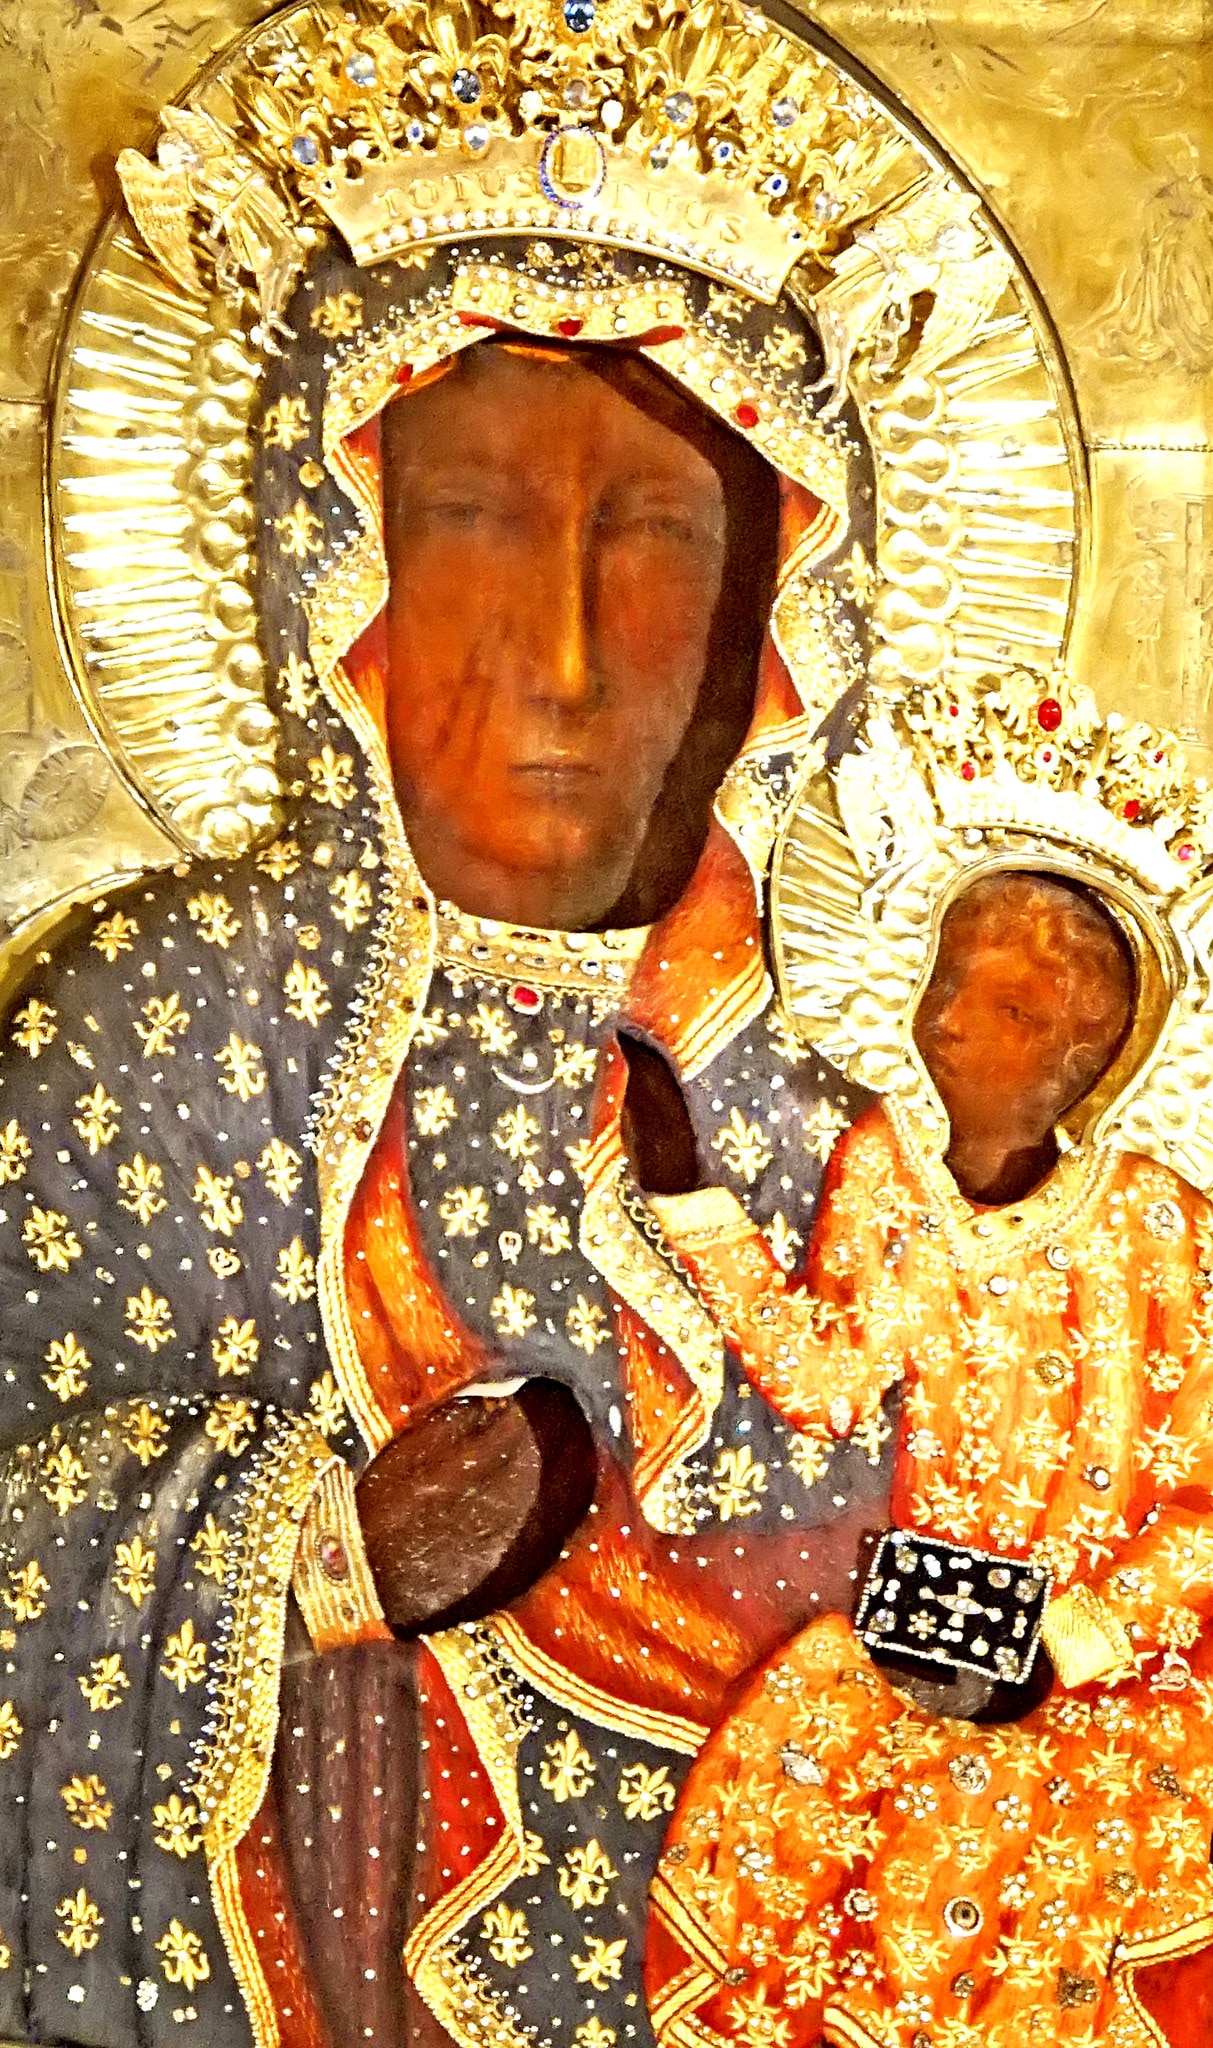 Black Madonna of Częstochowa